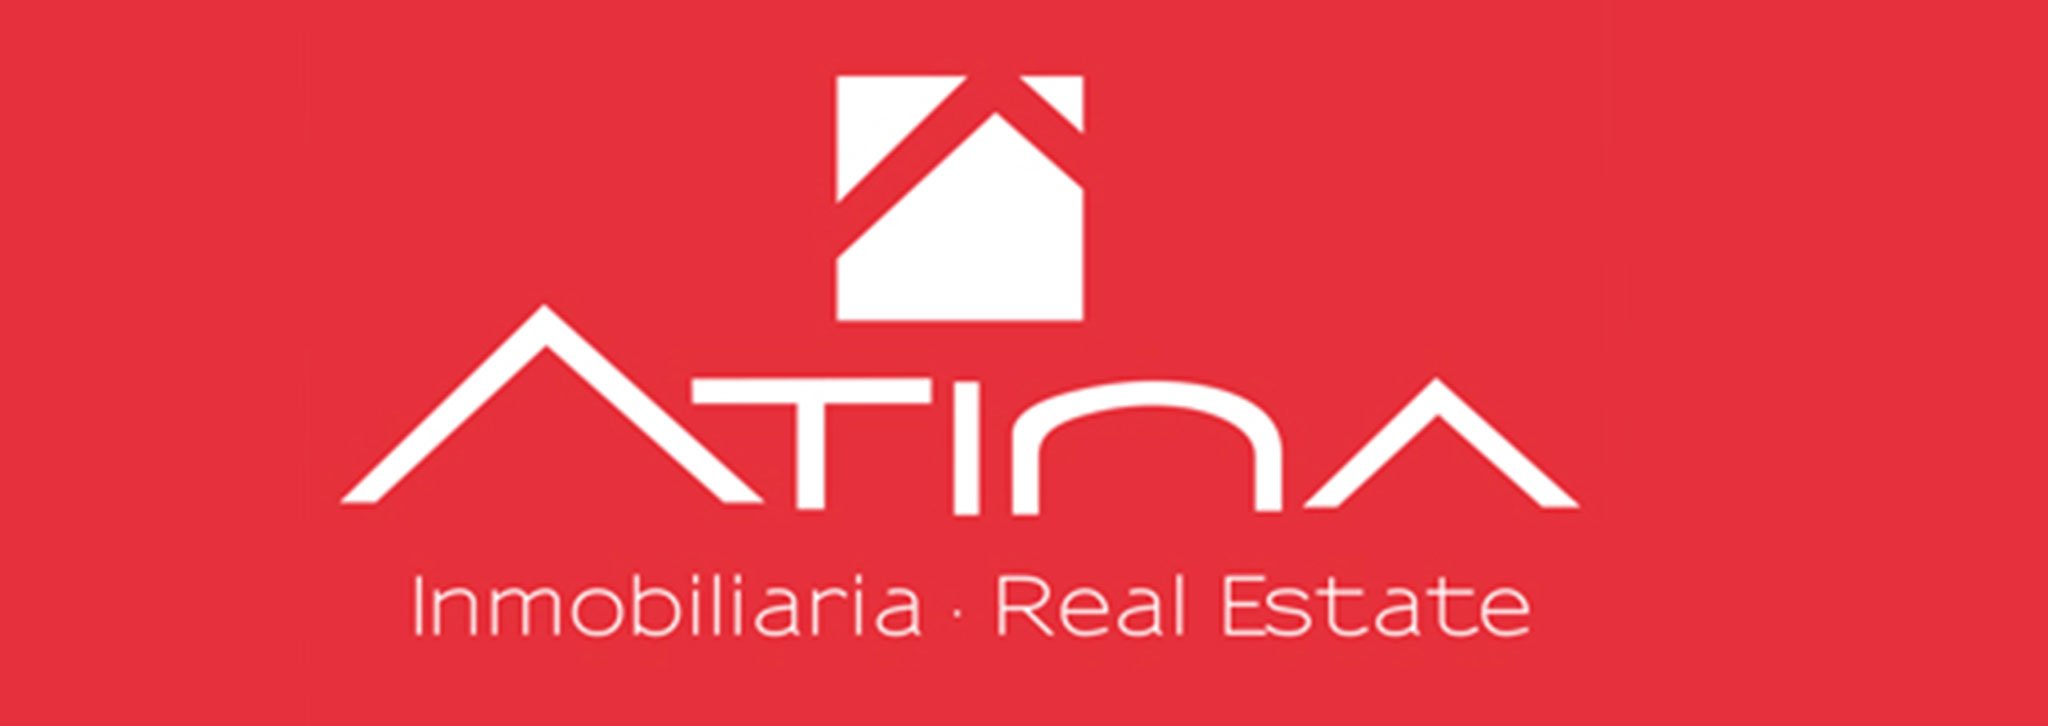 Logotipo Atina Inmobiliaria